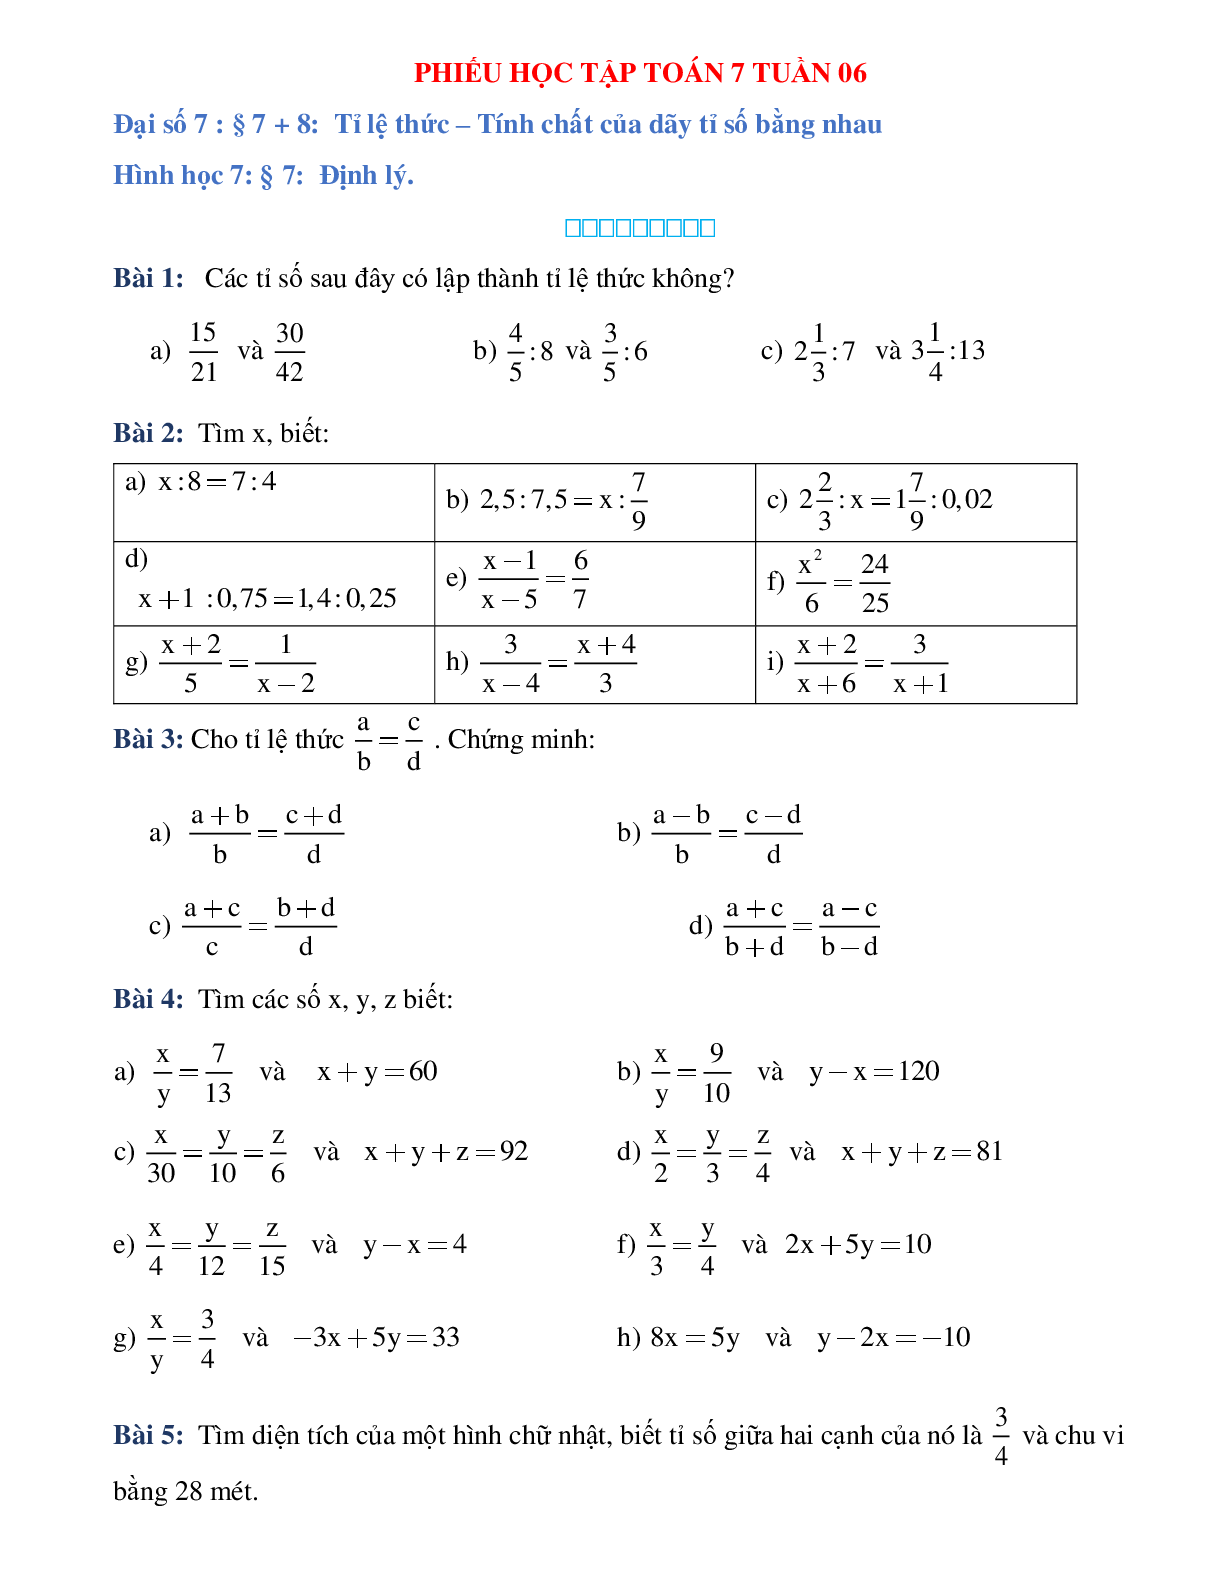 Phiếu bài tập tuần 6 - Toán 7 (trang 1)